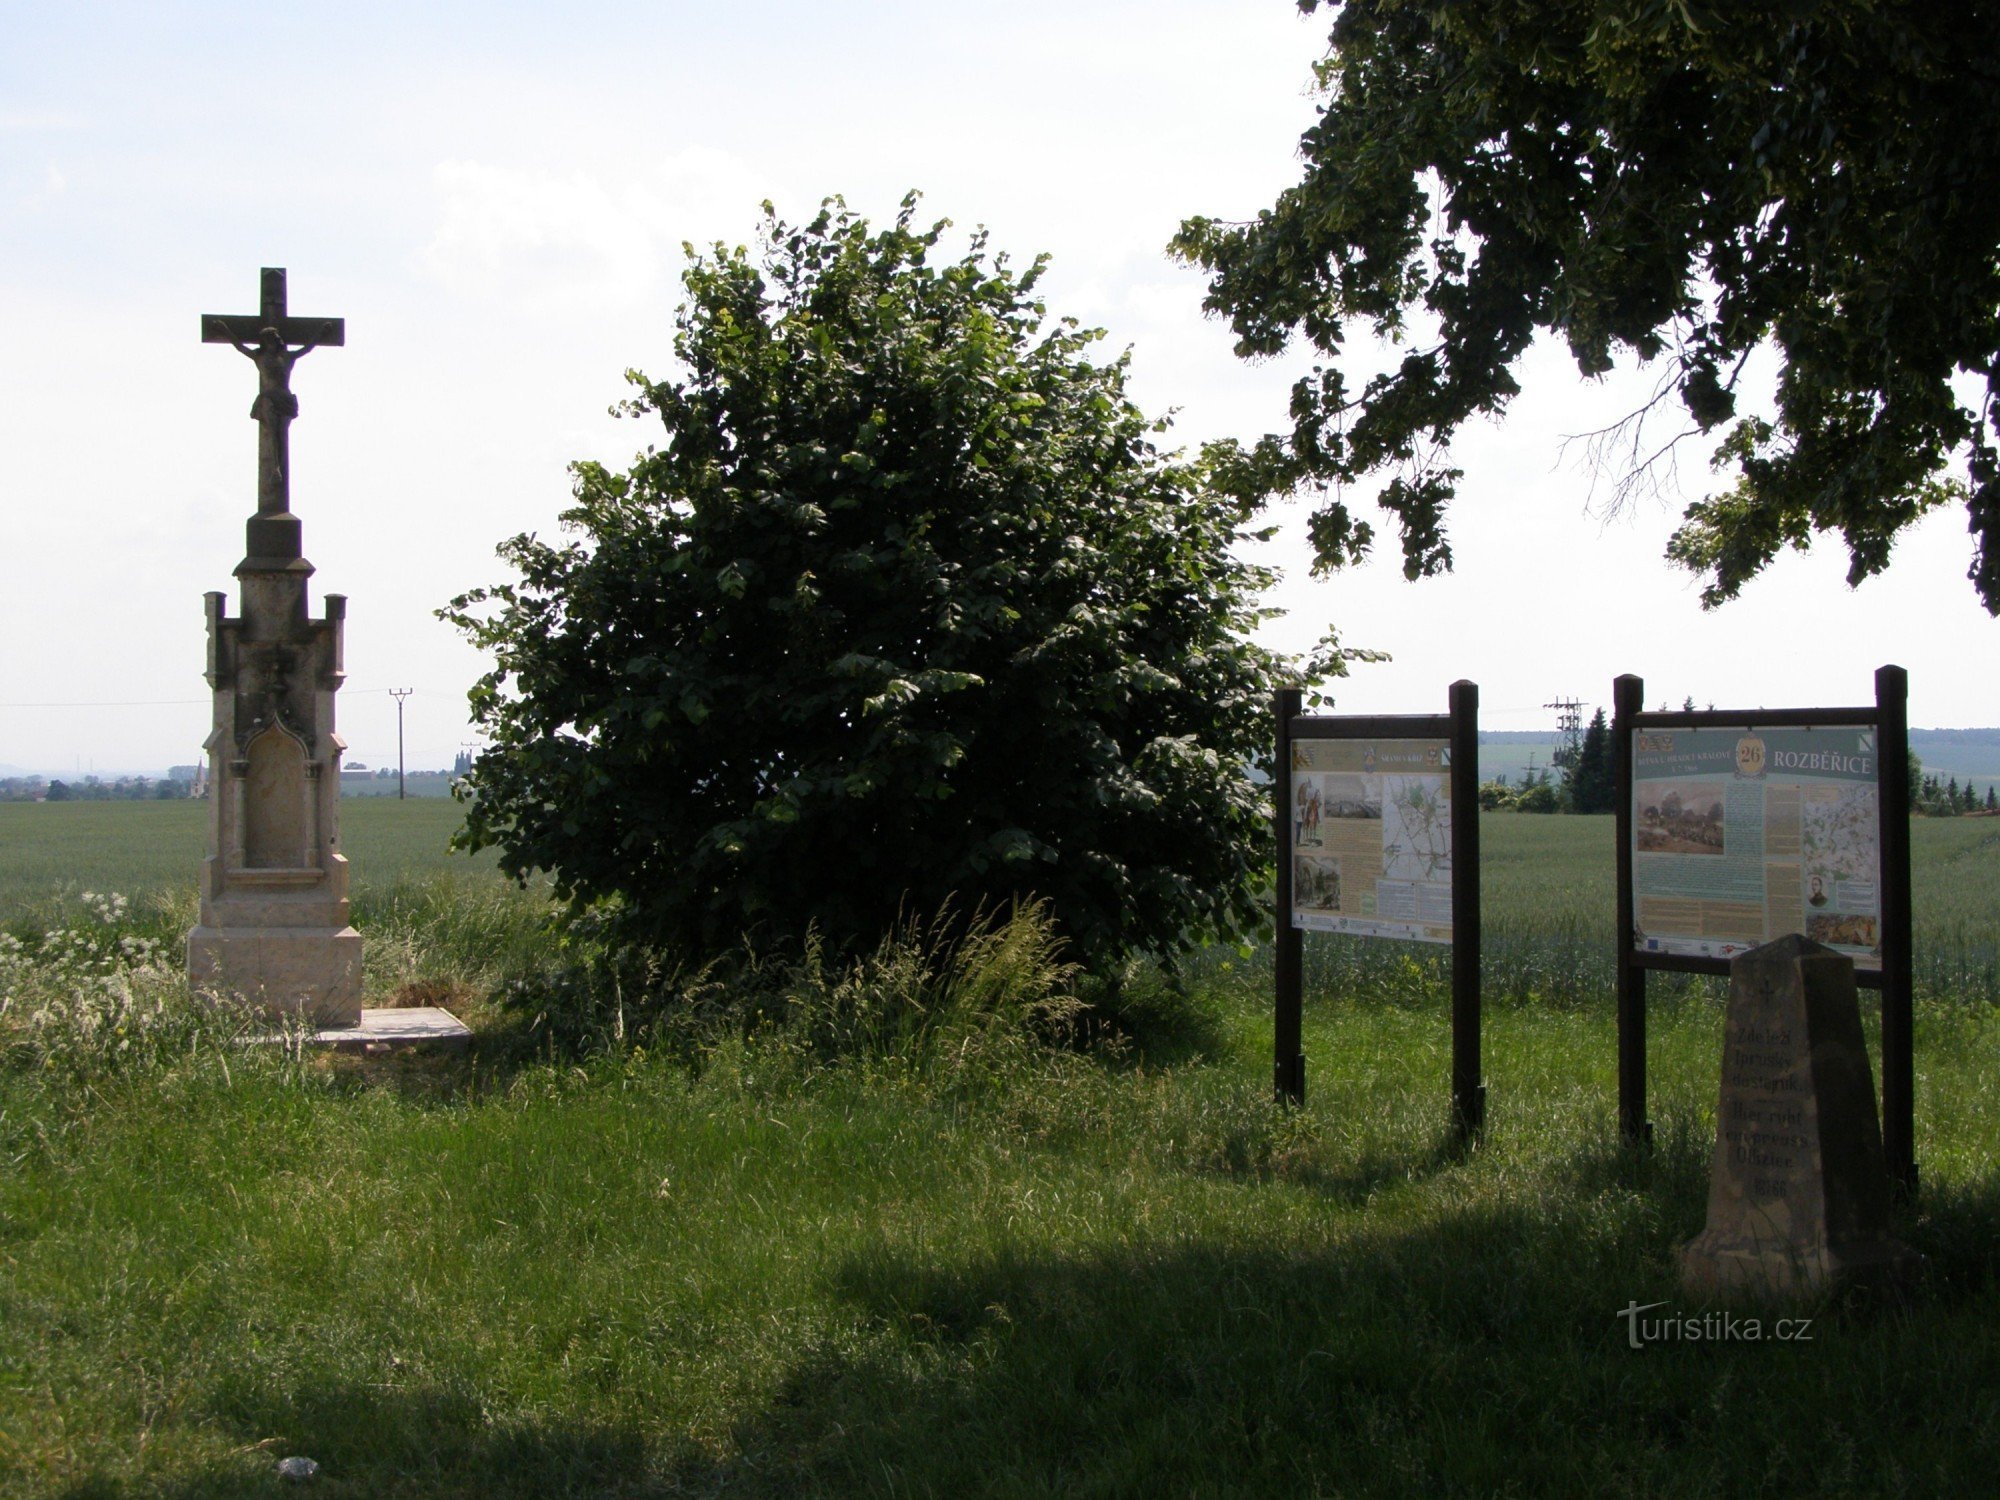 Τουριστικό σταυροδρόμι Rozběřice - κοντά στο σταυρό του Šrám